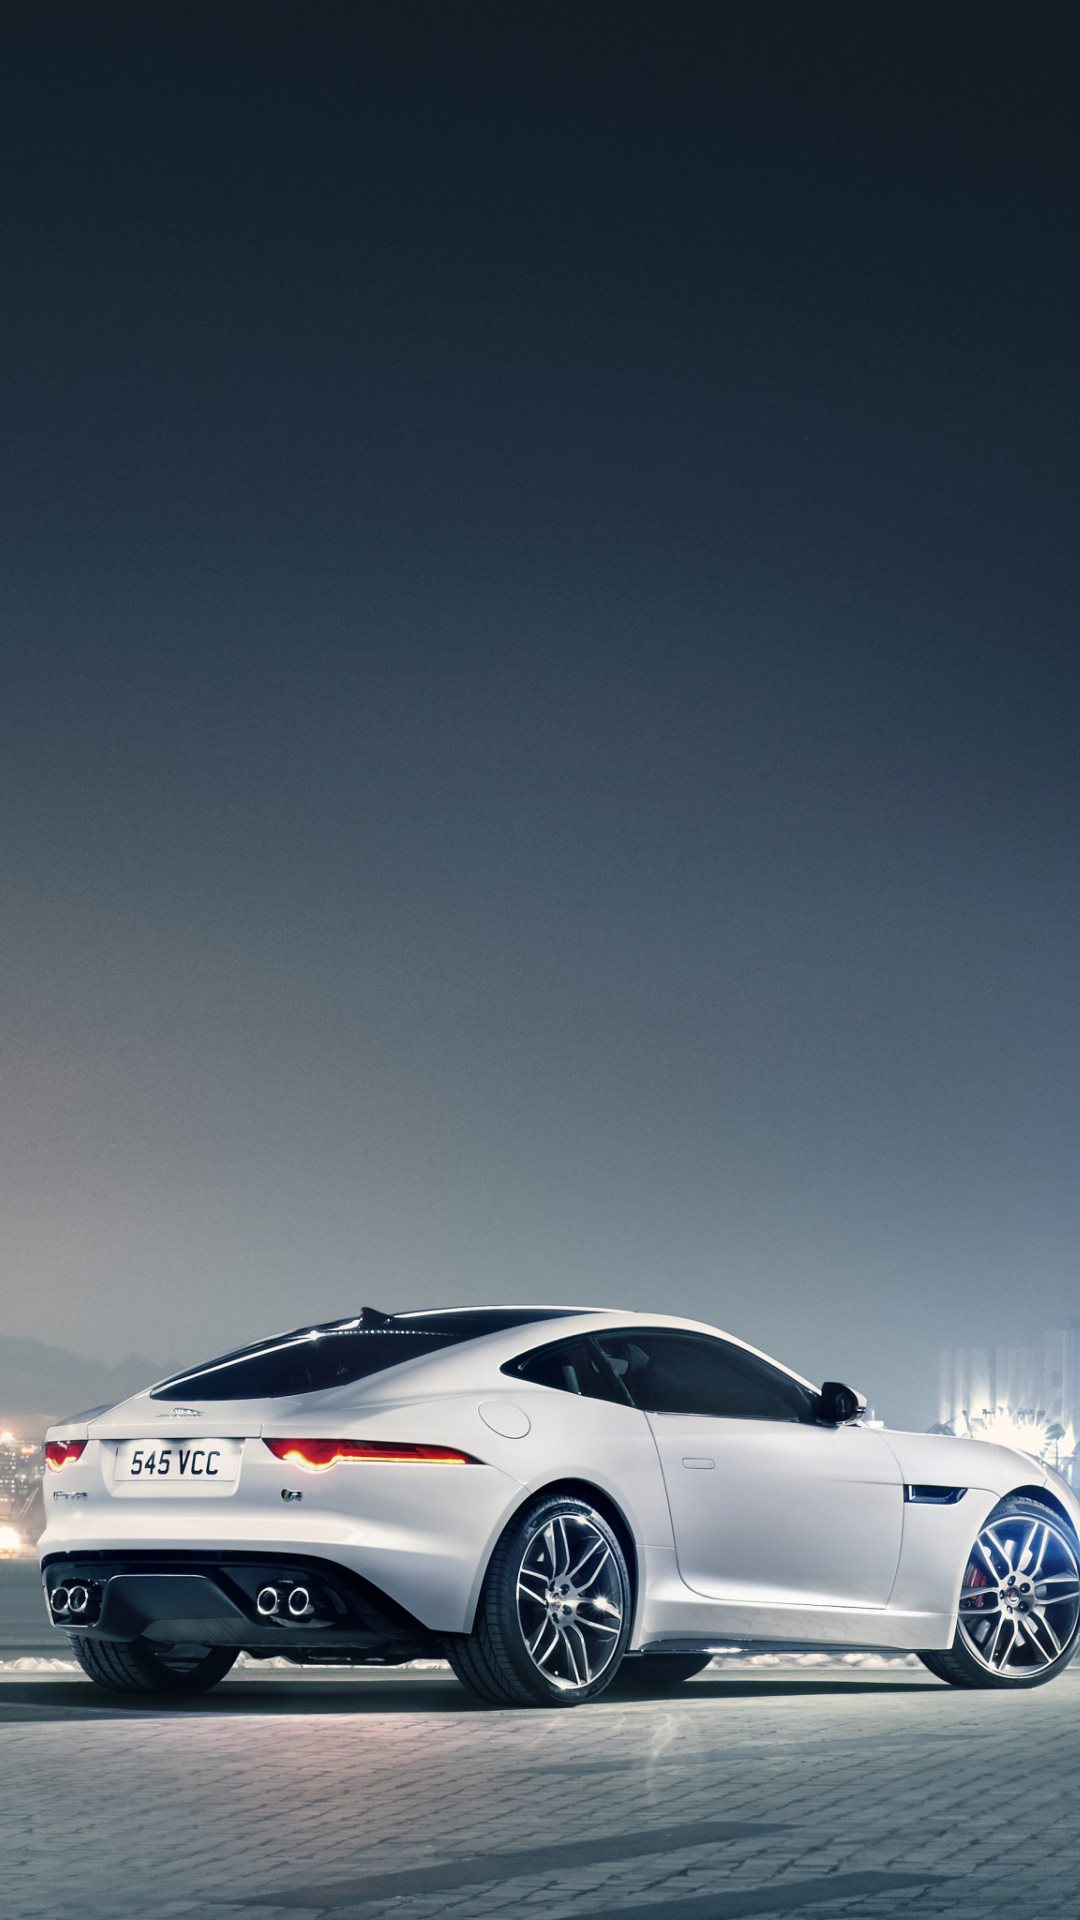 fond d'écran iphone jaguar,véhicule terrestre,véhicule,voiture,voiture de luxe personnelle,voiture de sport